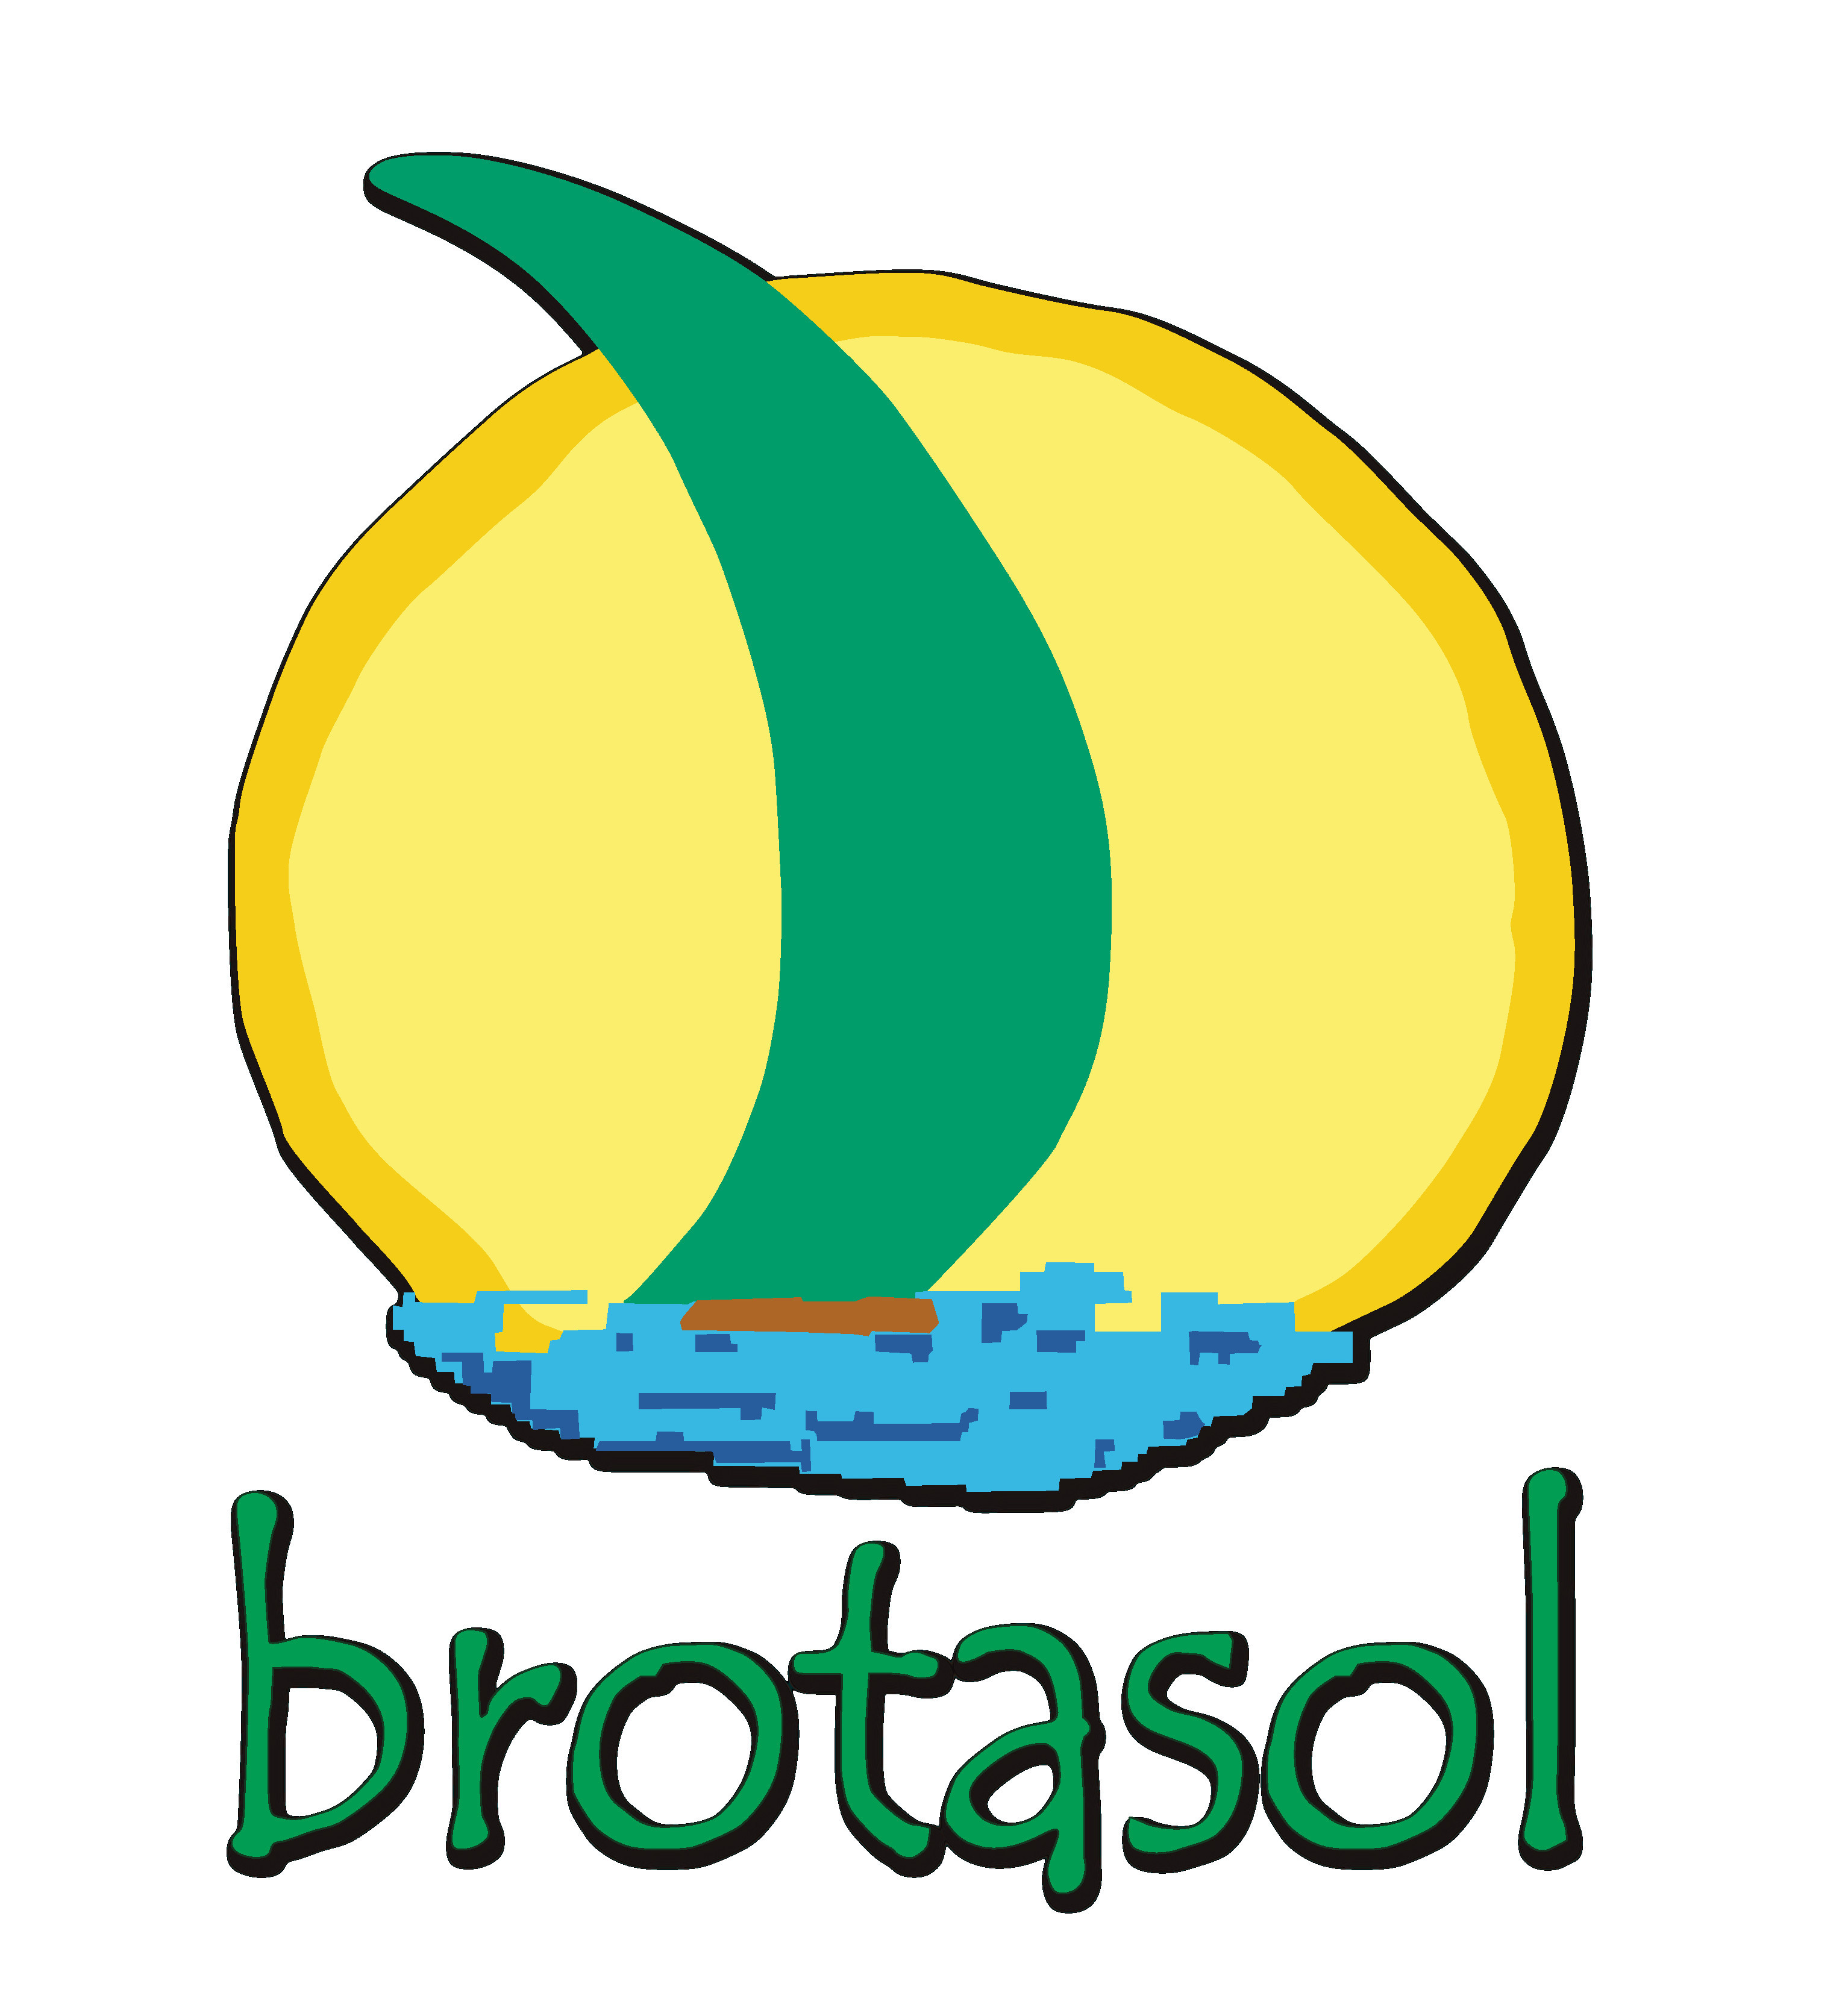 Productos Brotasol